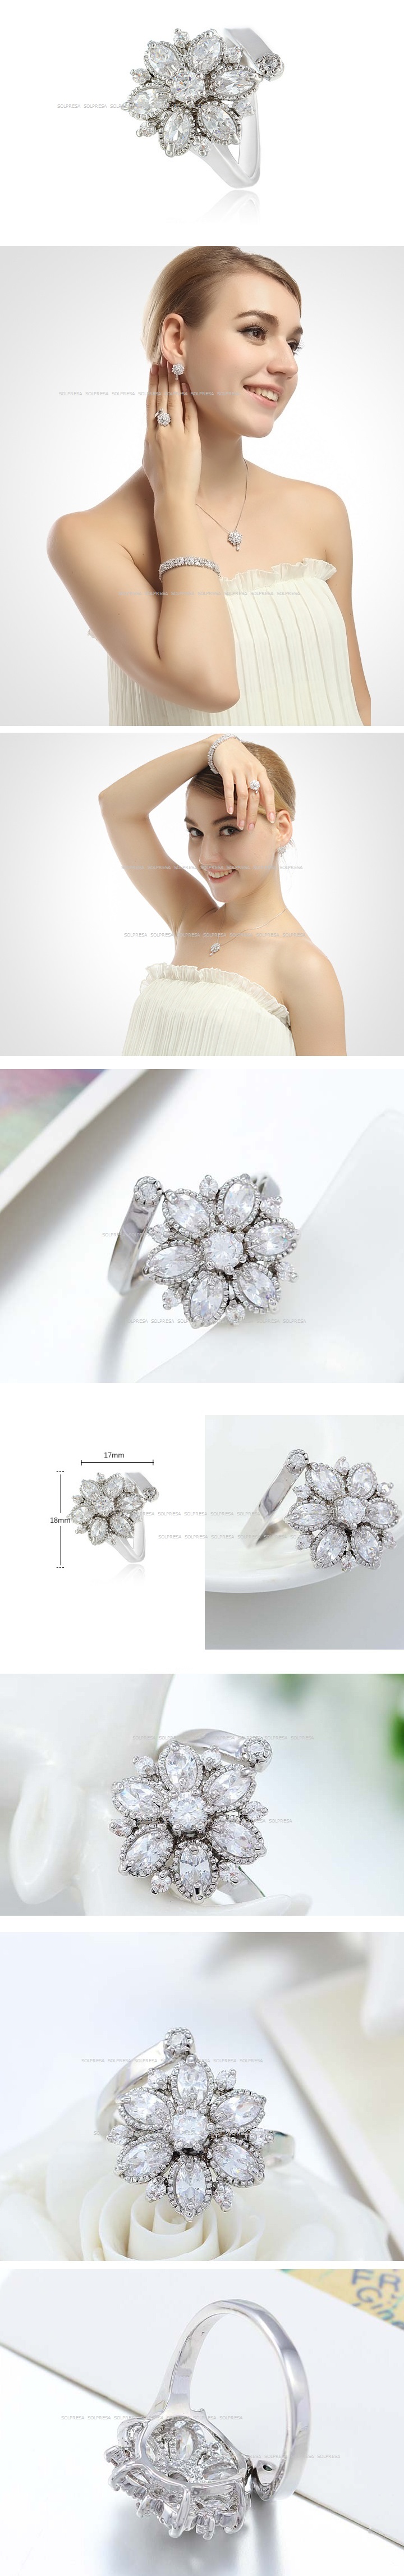 Solpresa Bridal Prosperity Flower 18K Ring